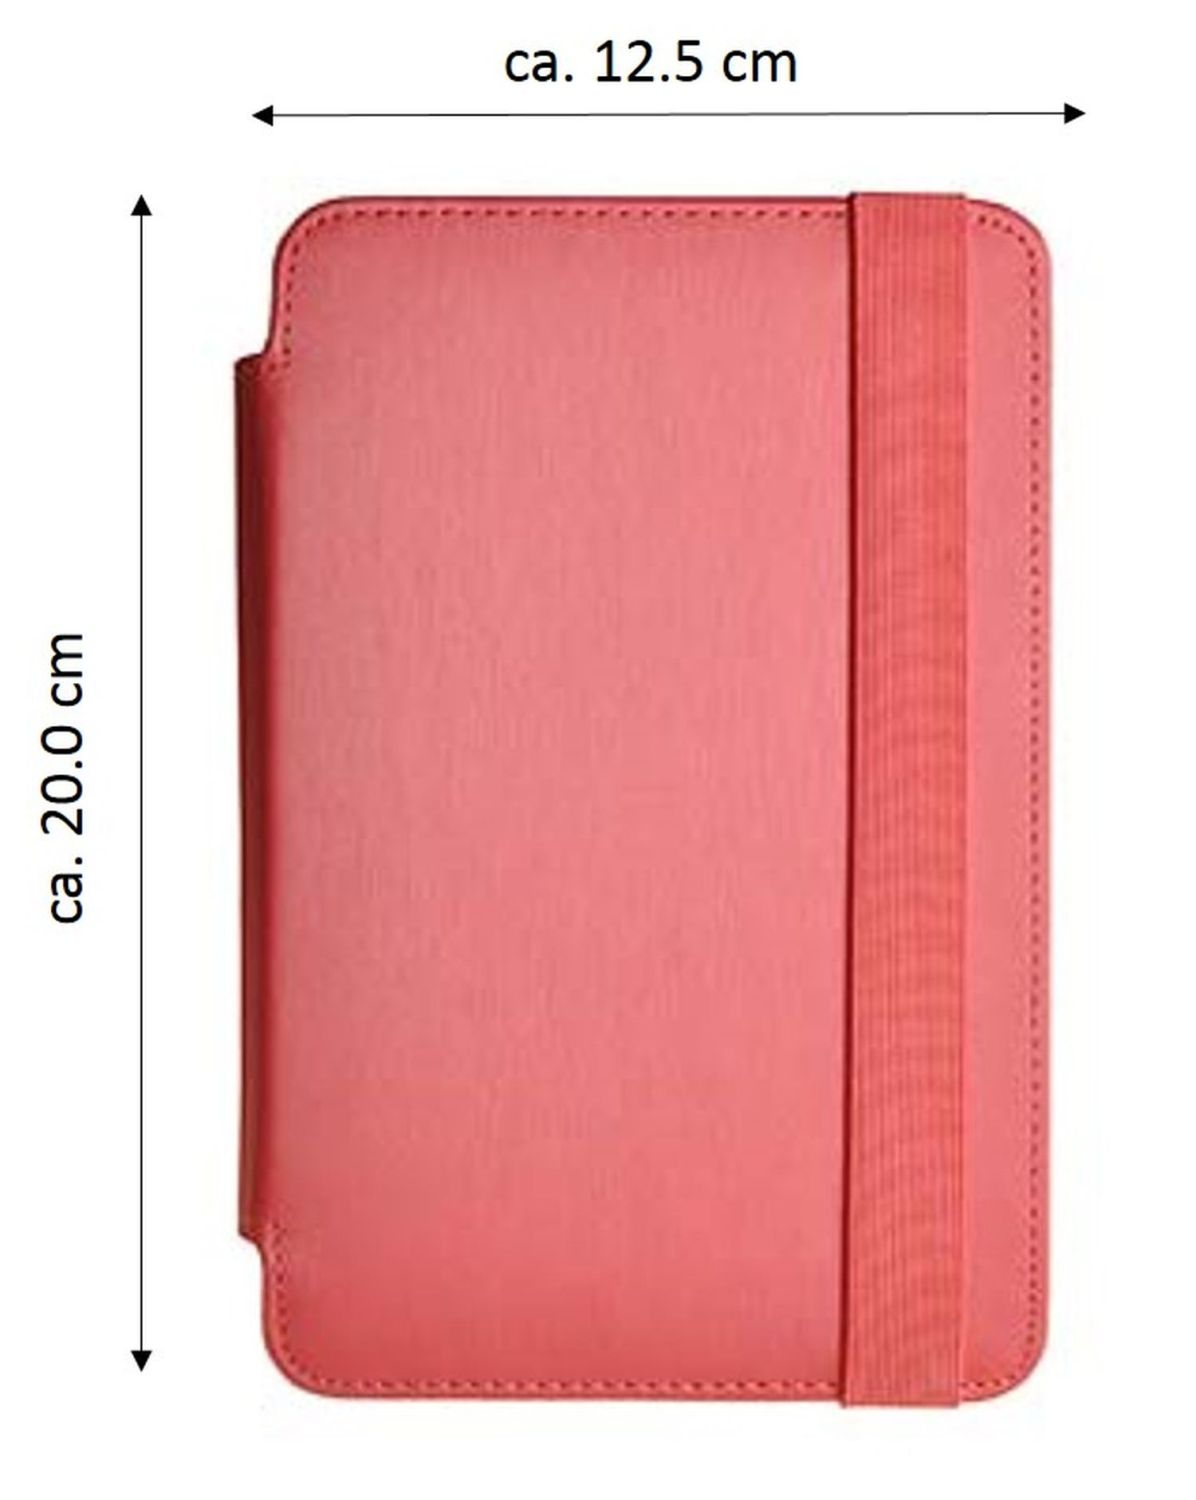 COFI Tablet Hülle Case Universal Zoll Kunstleder, 7 Bookcover Tablets für Rot